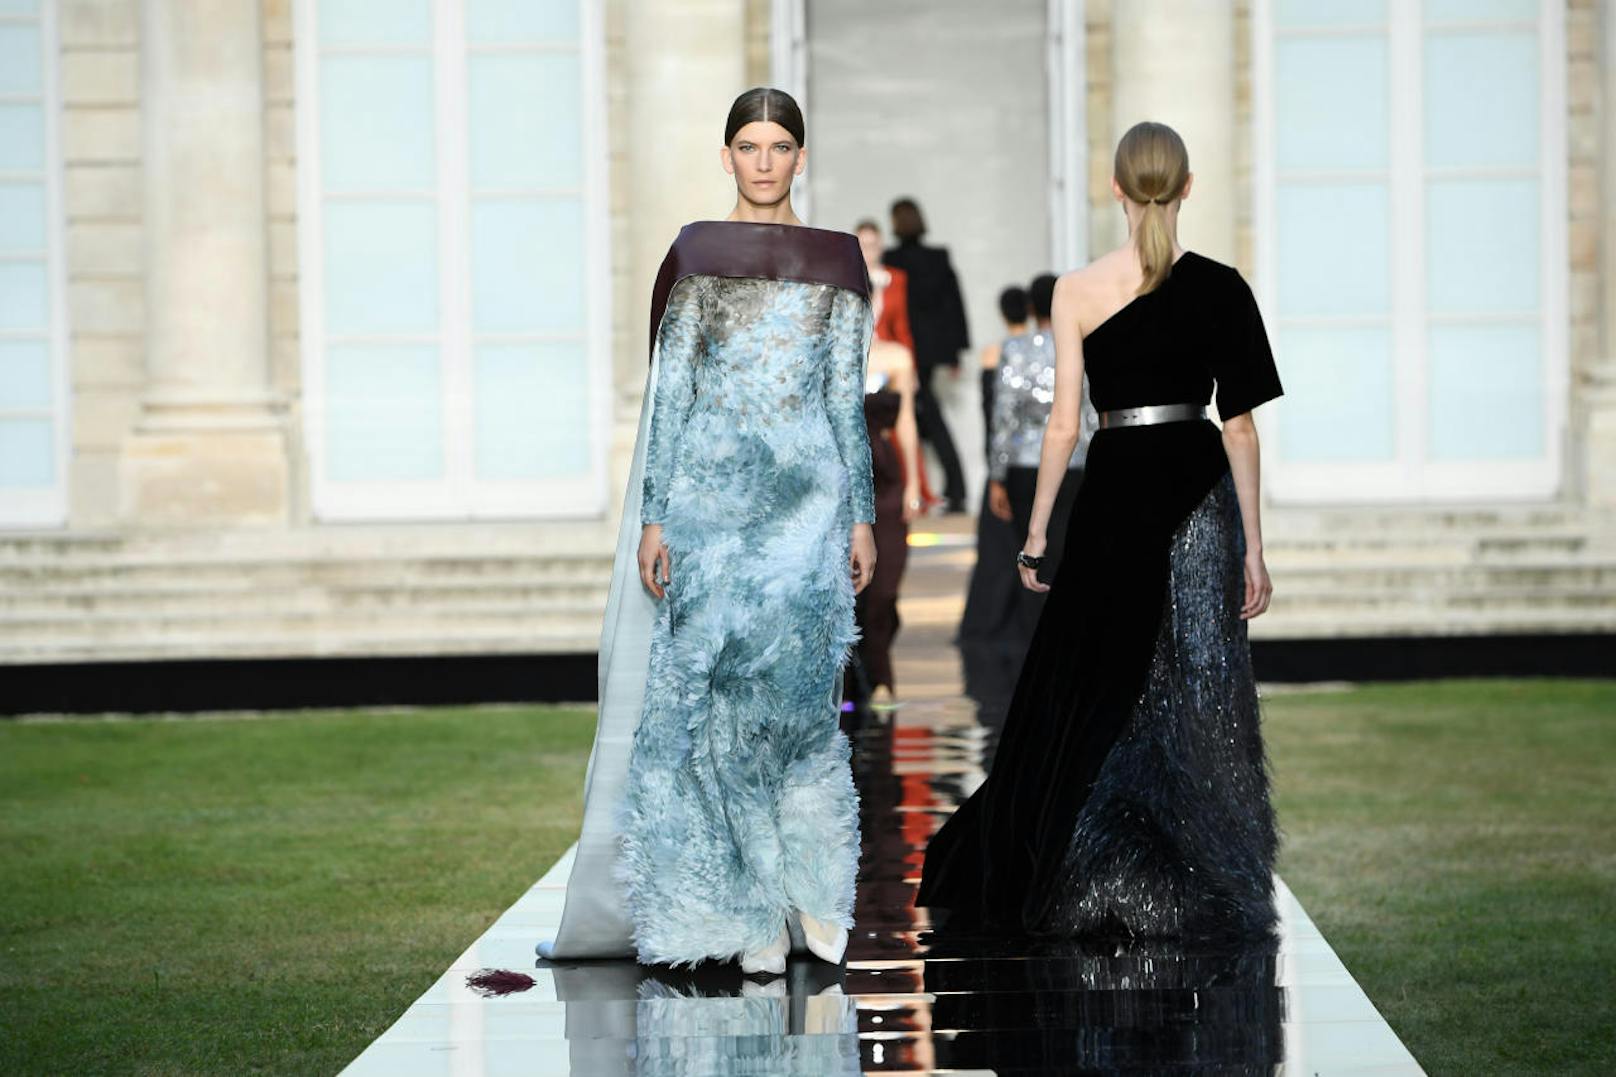 Der Klassiker darf nicht fehlen: Givenchy ist immer dabei und seit 60 Jahren ein erfolgreiches Pariser Modehaus.